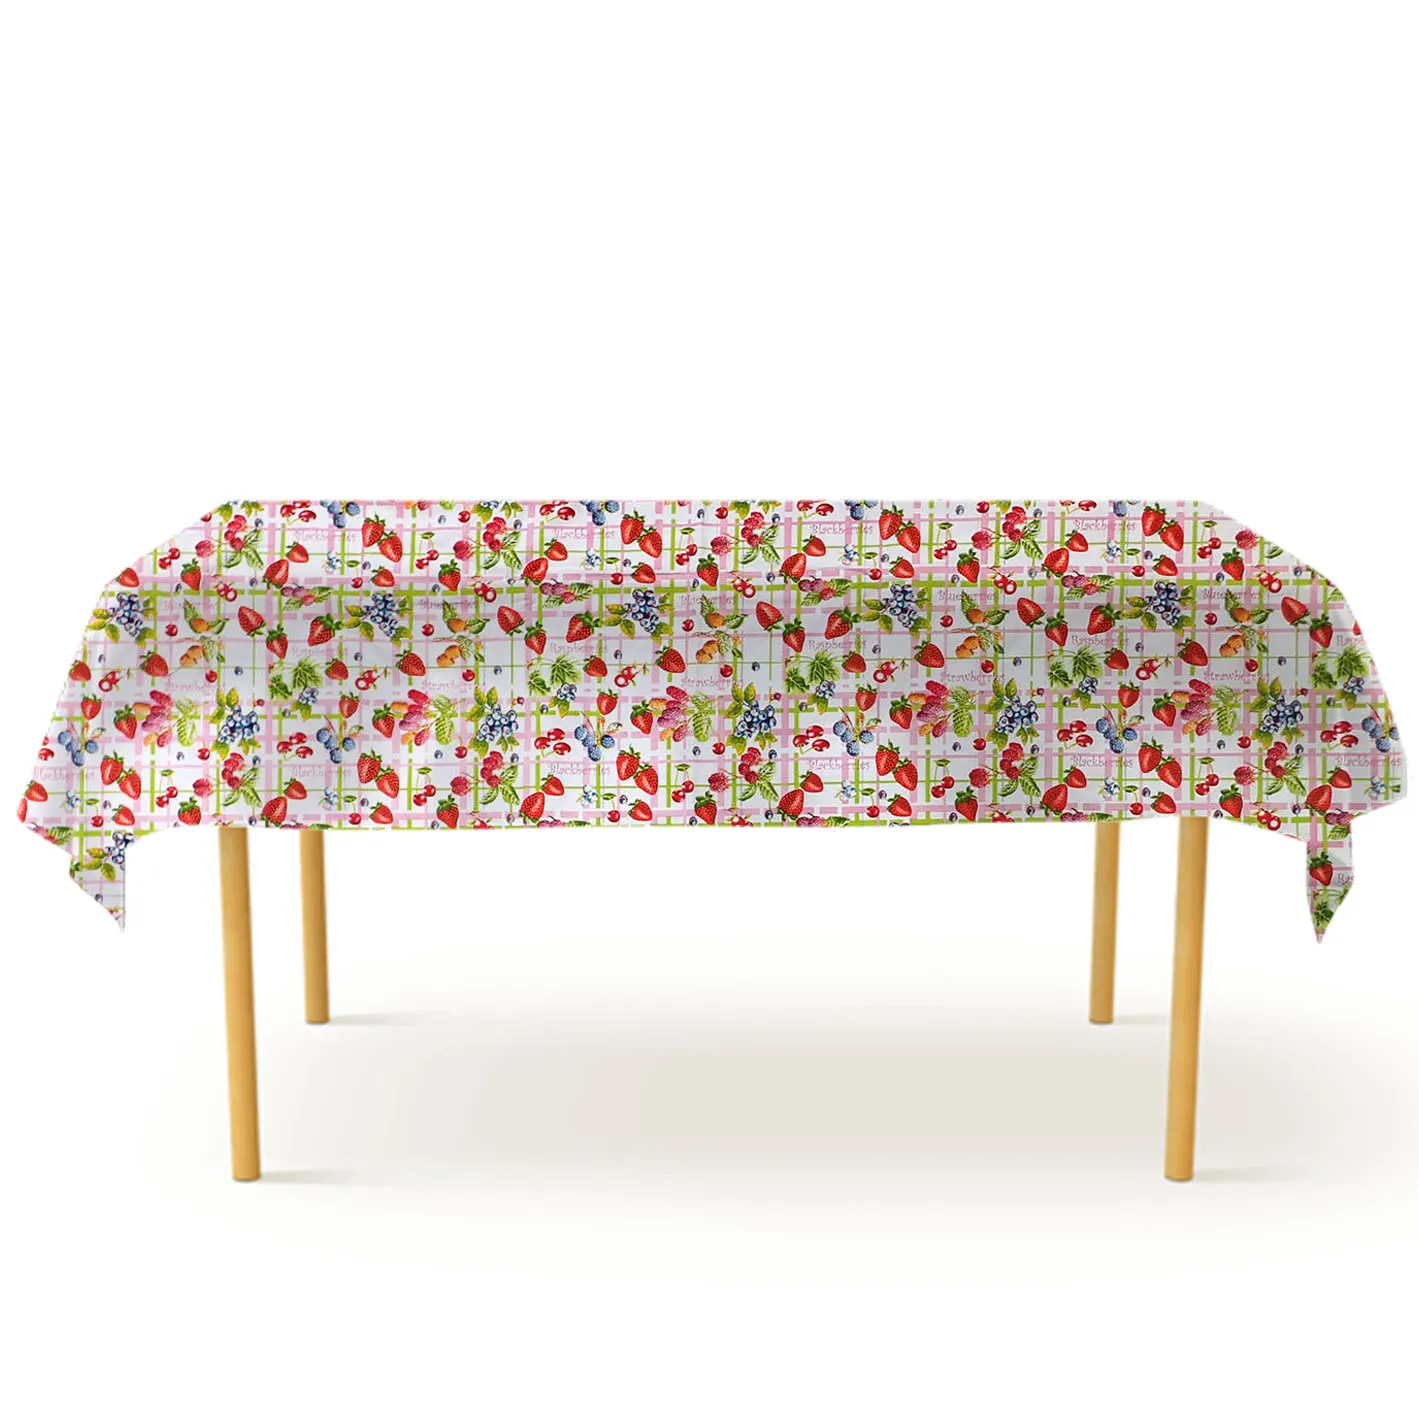 Tischdecke 160 x 132 cm, 100 % Baumwolle, sehr schöner Erdbeerdruck